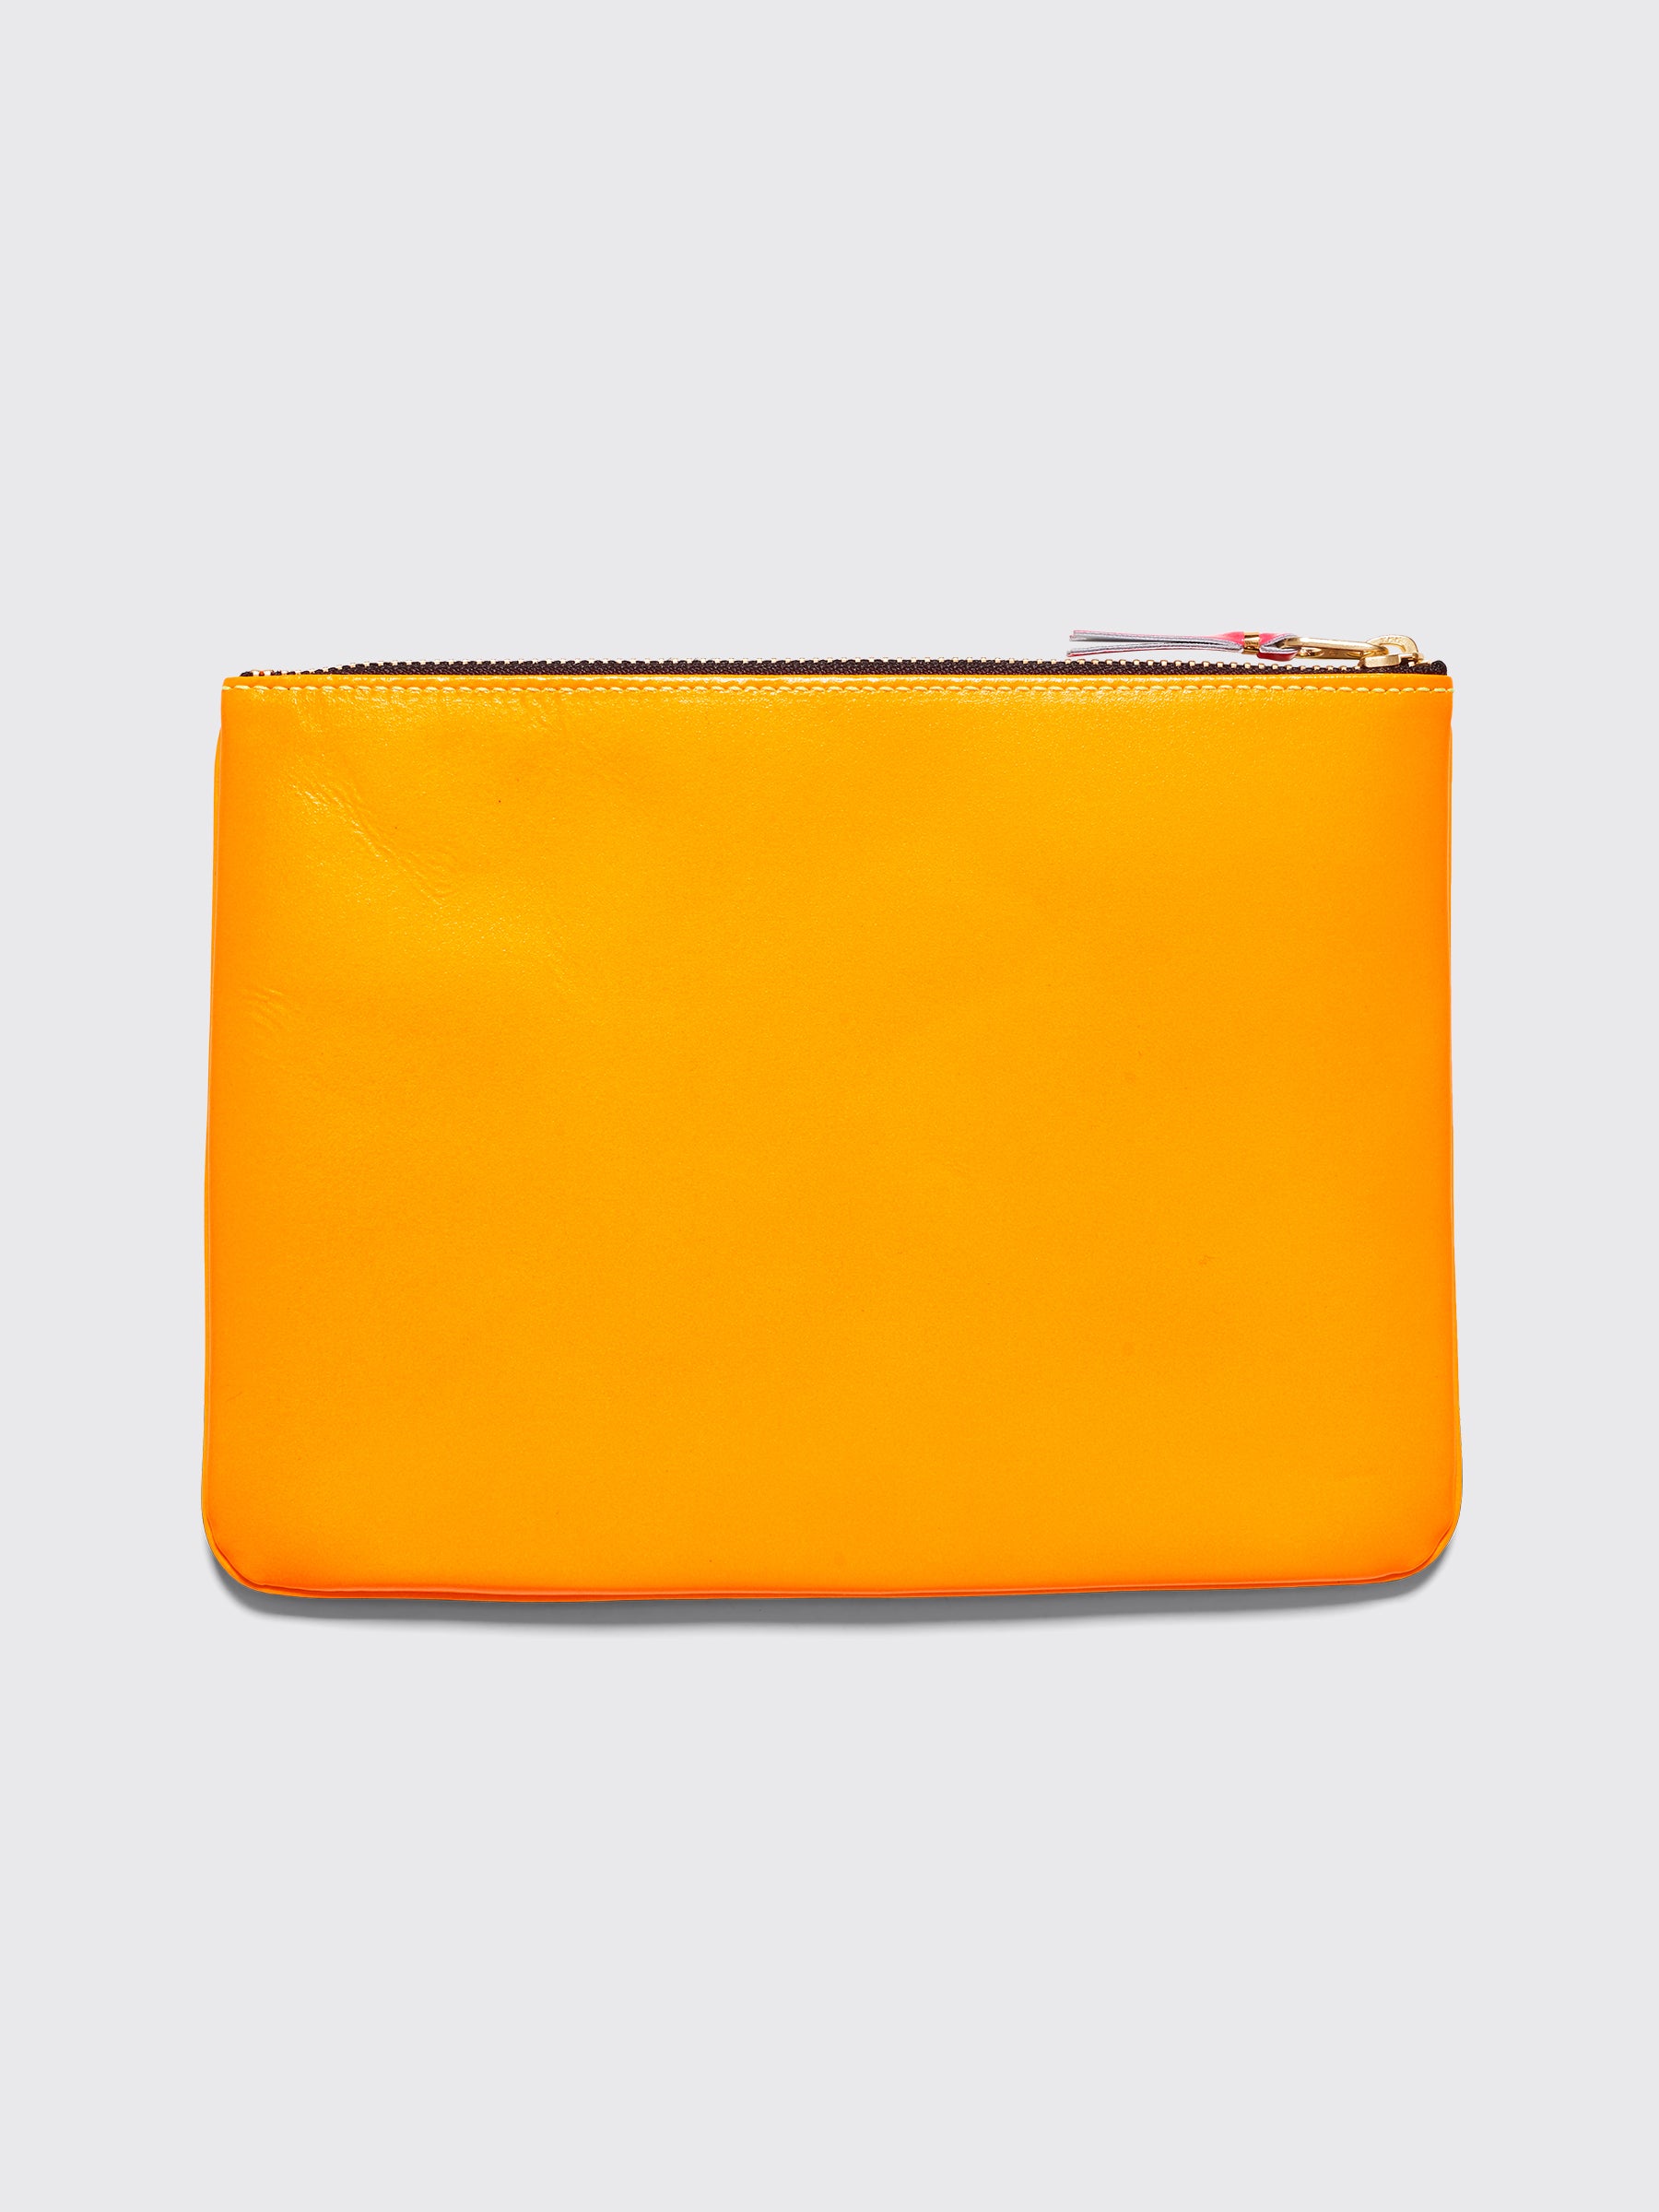 Comme des Garçons Wallet SA5100 Super Fluo Yellow / Orange